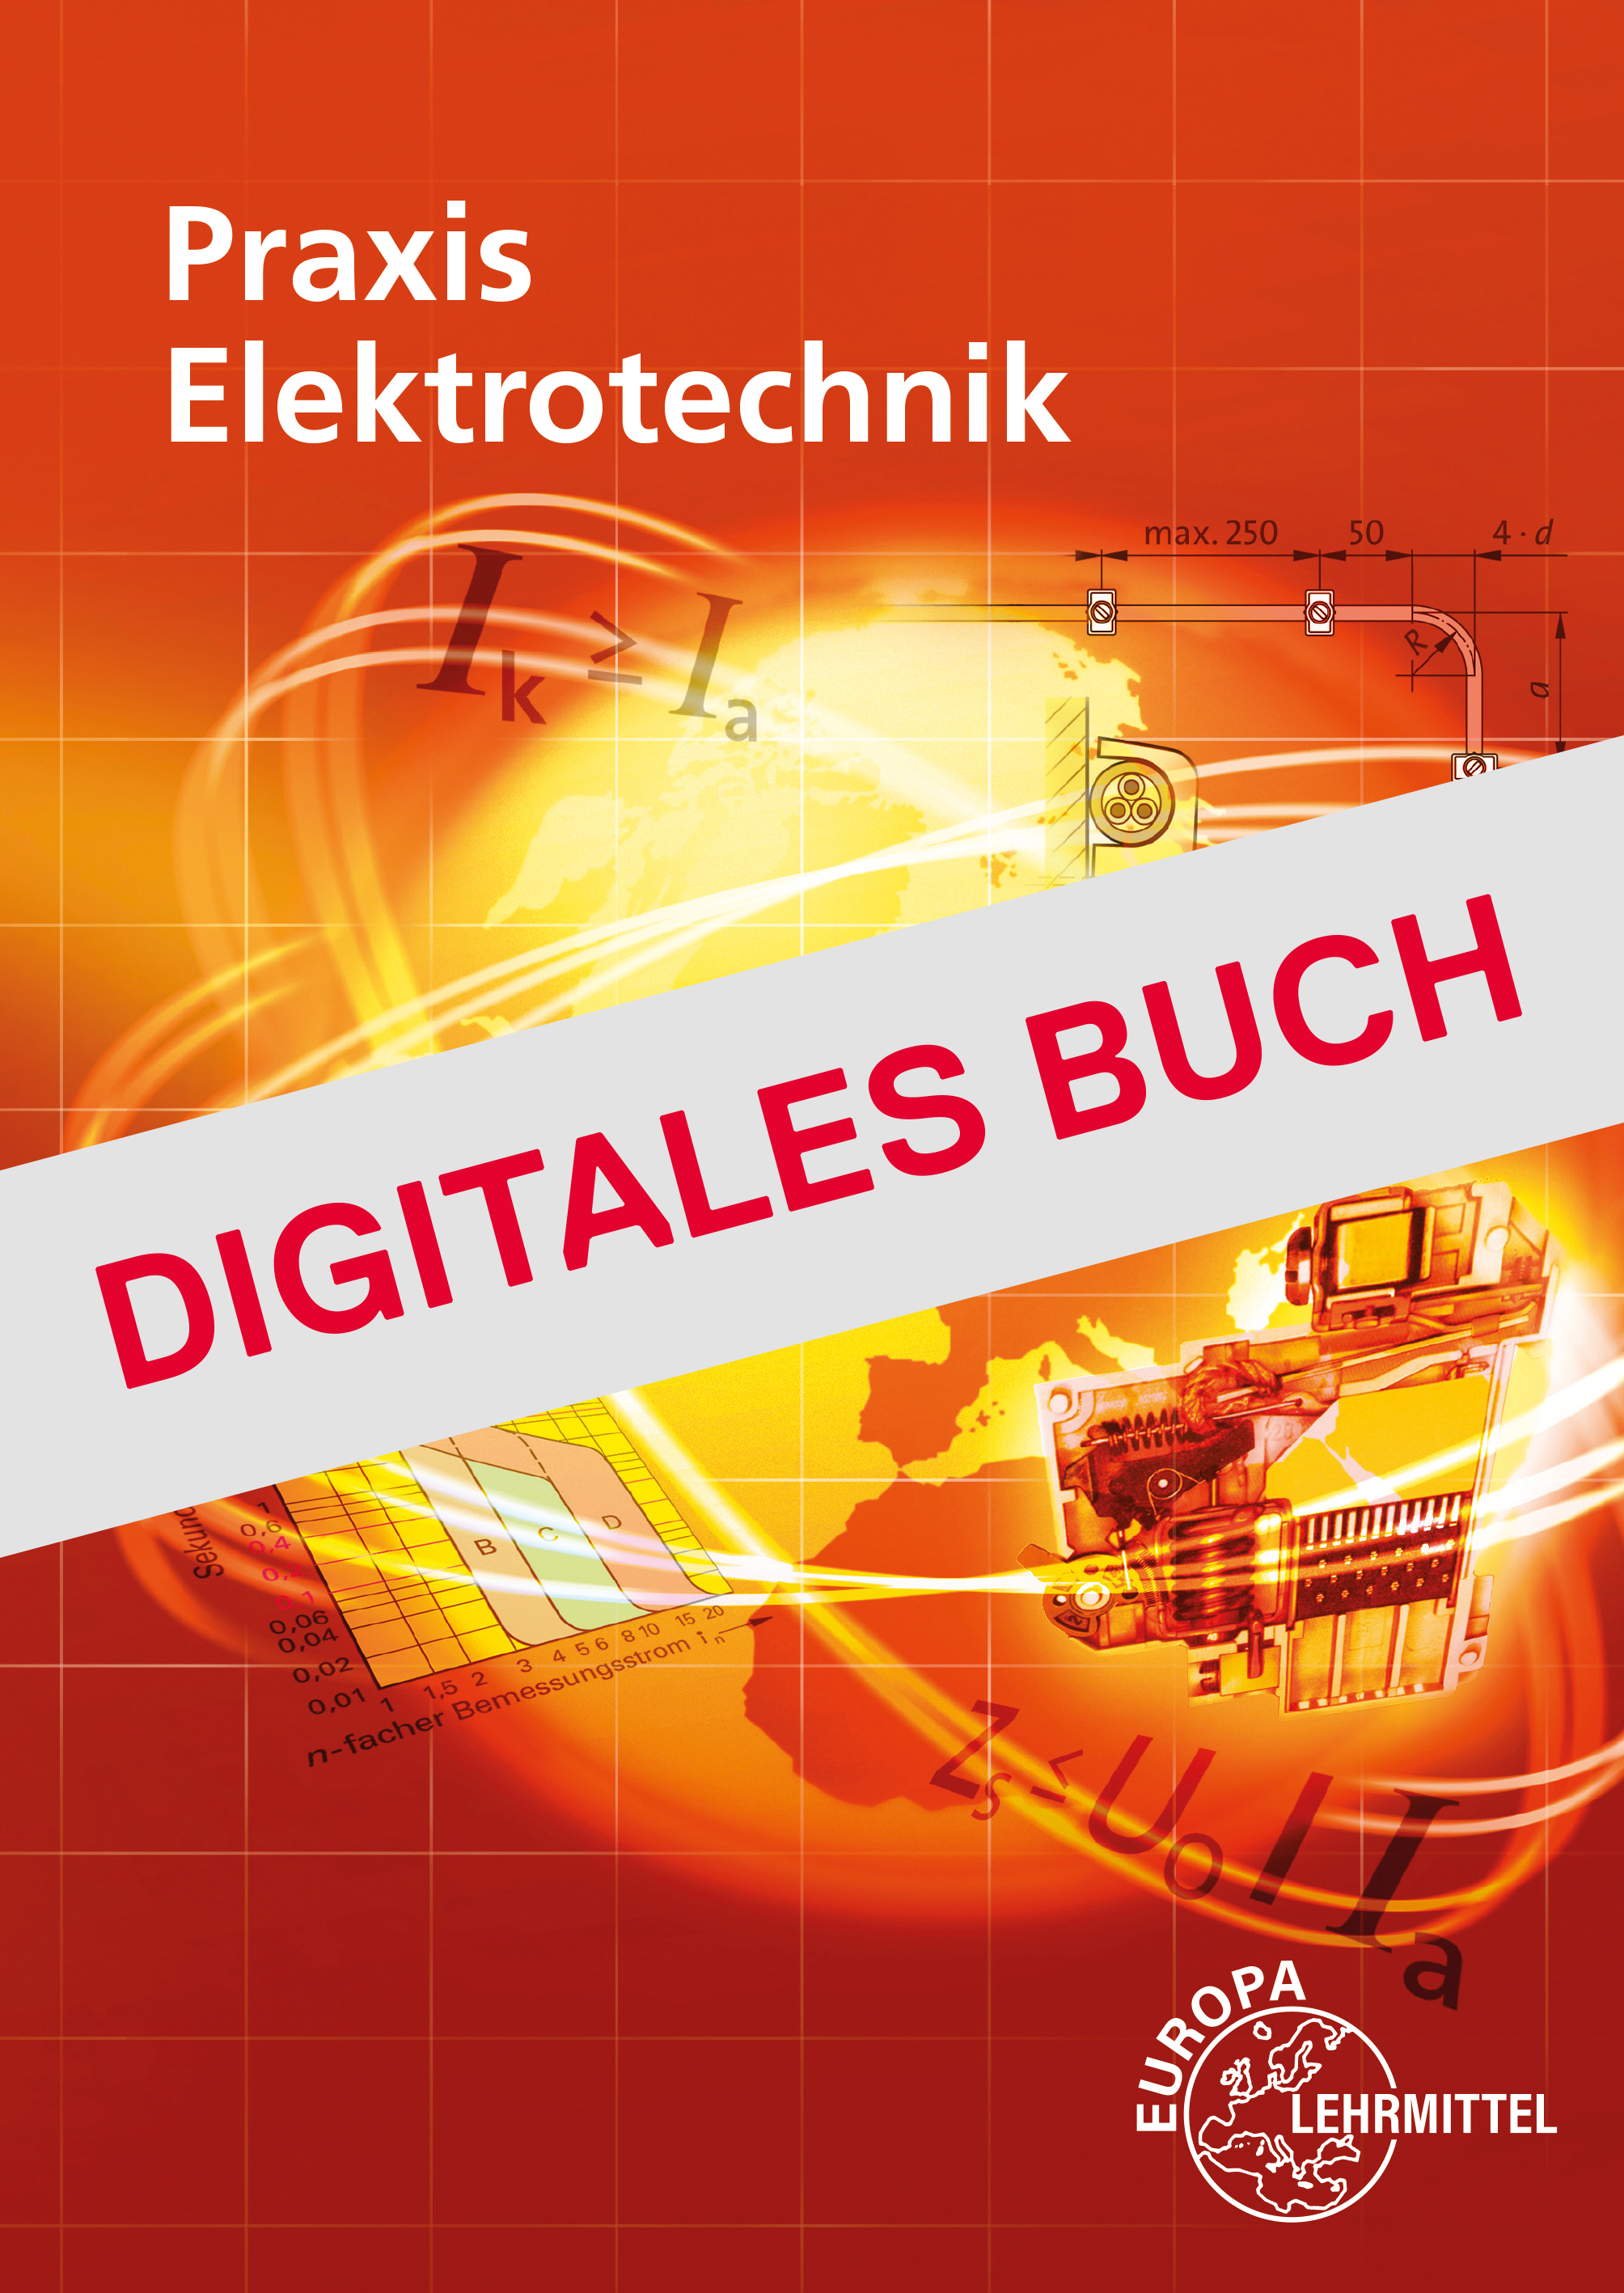 Praxis Elektrotechnik - Digitales Buch